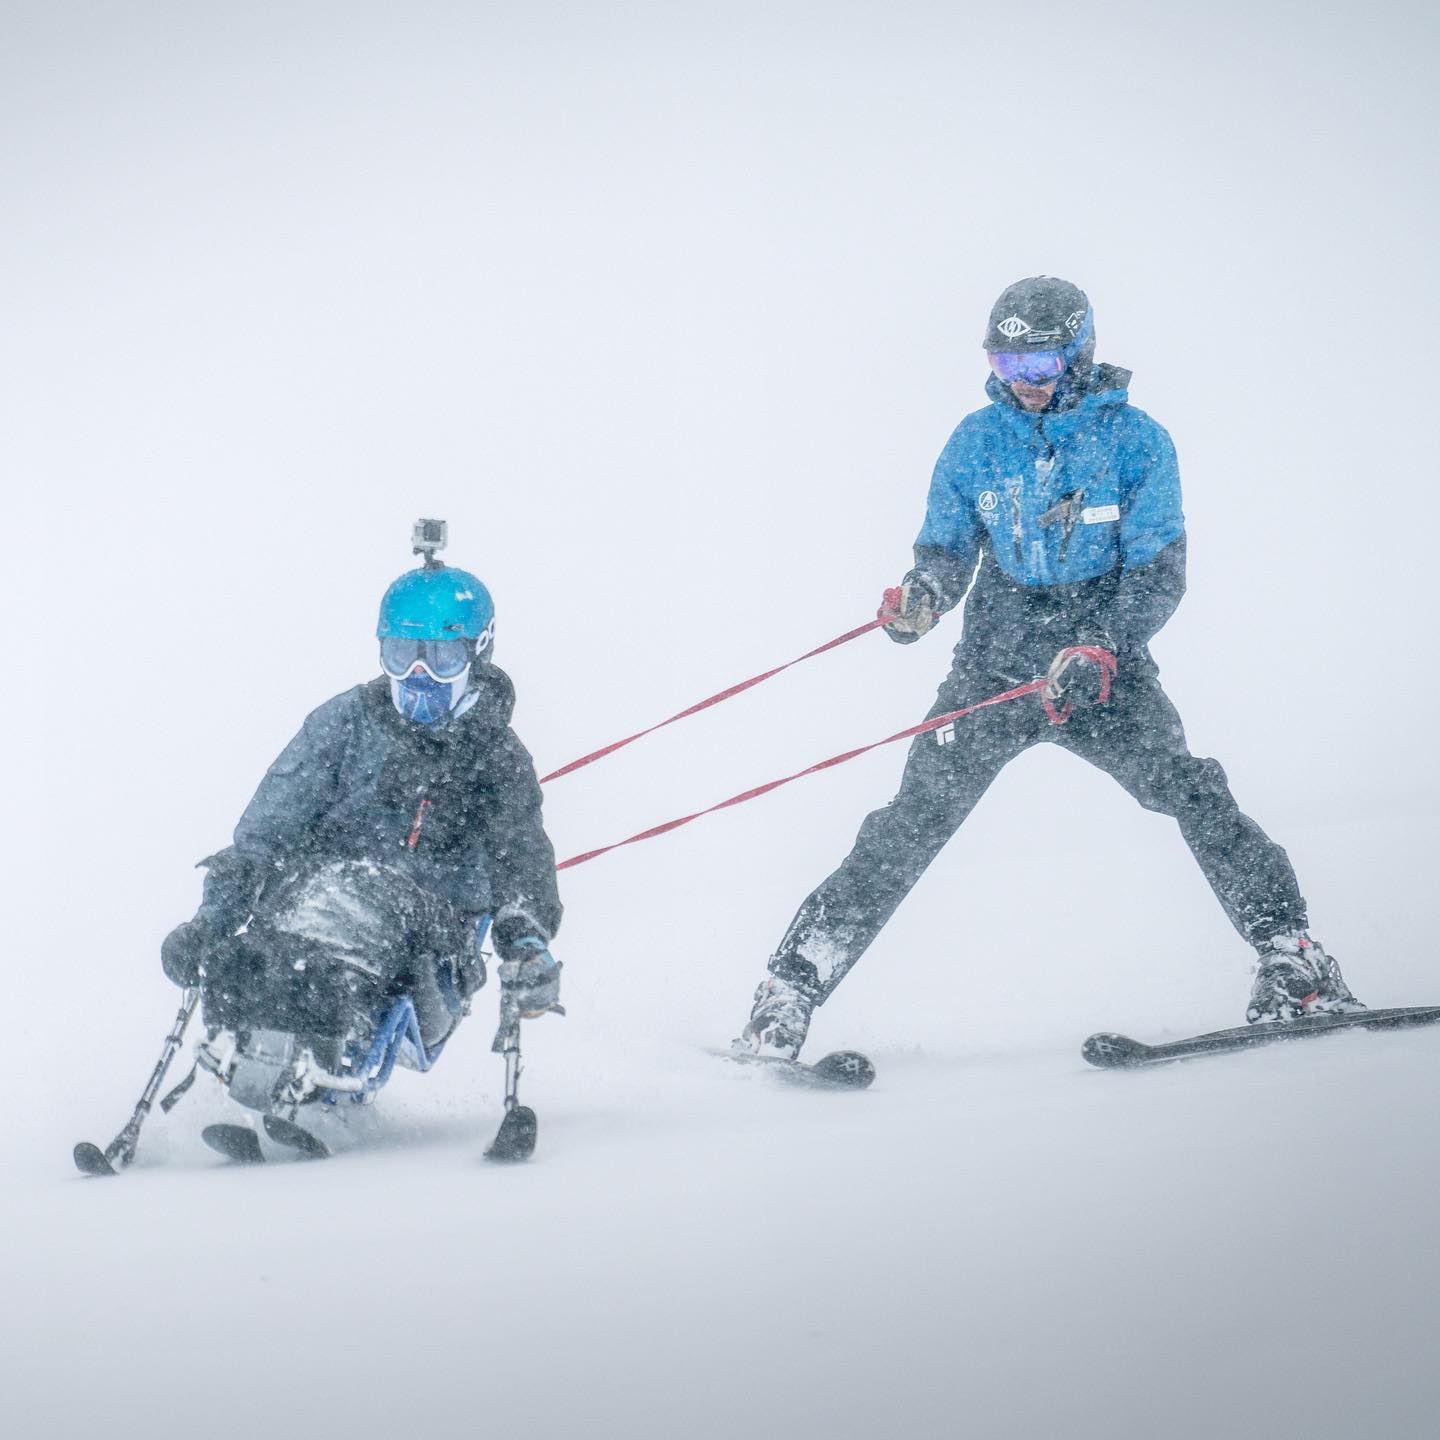 tip your ski instructor